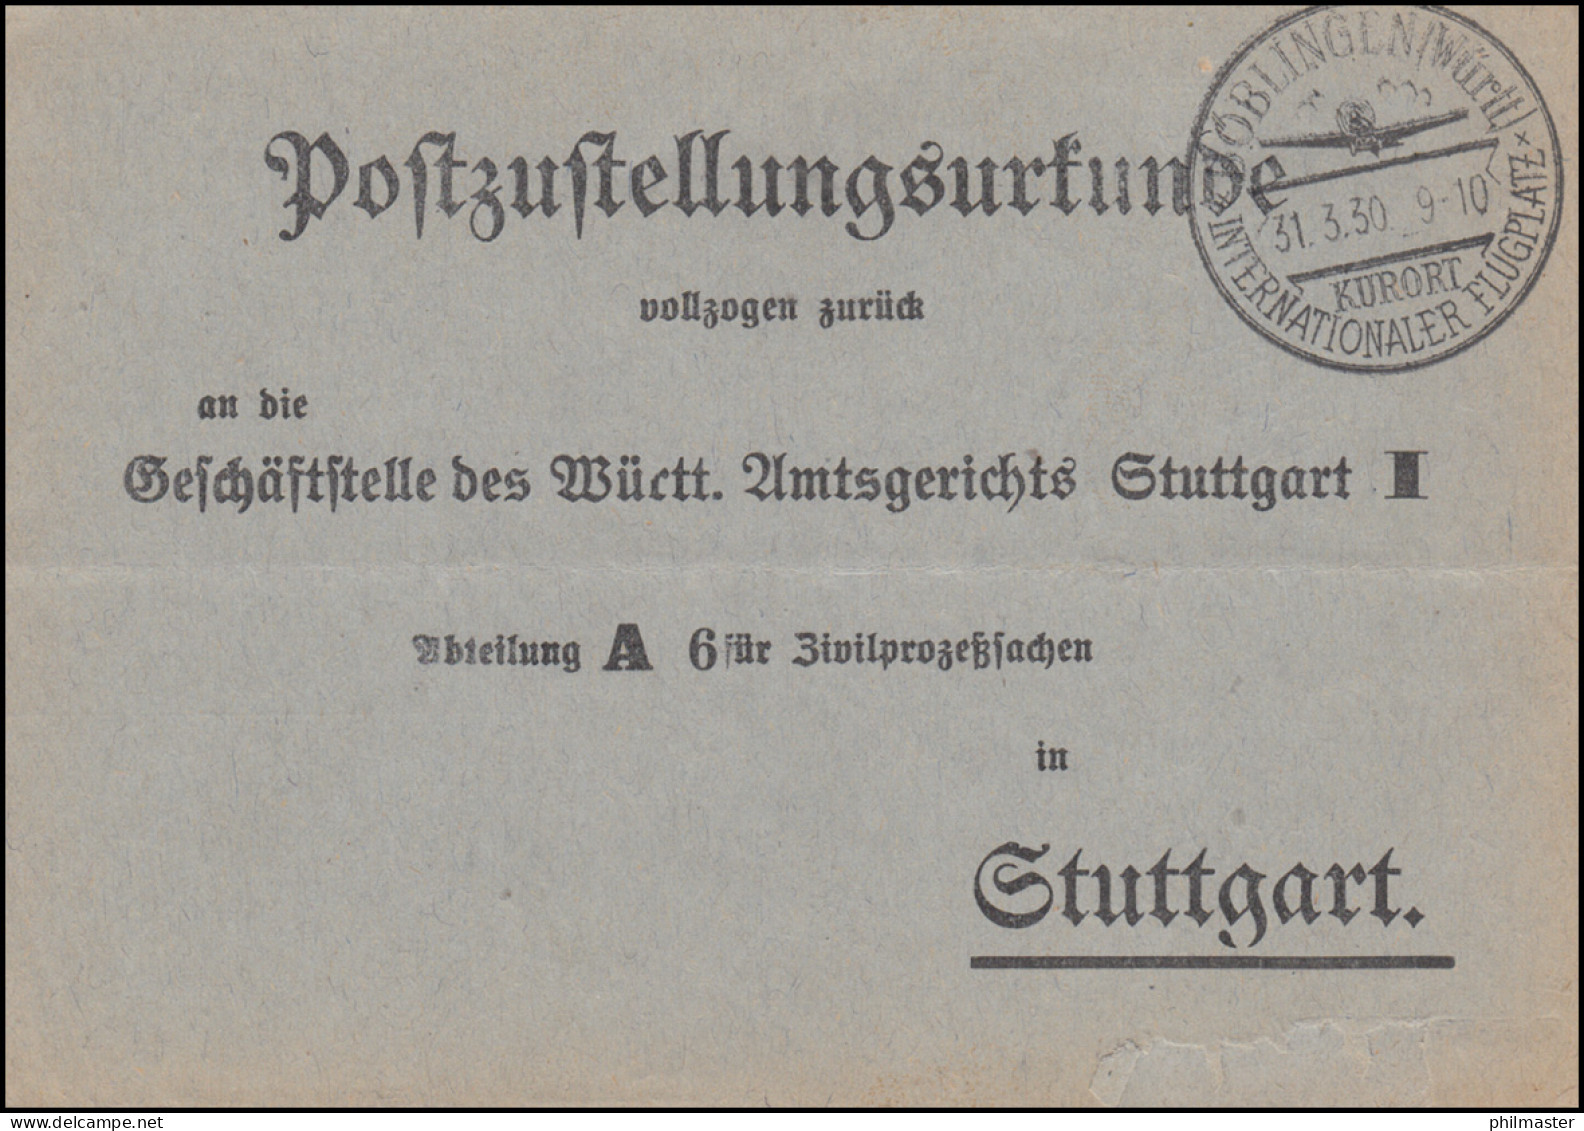 Postzustellungsurkunde Nach Stuttgart SSt BÖBLINGEN Intern. Flugplatz 31.3.1930 - Sonstige (Luft)